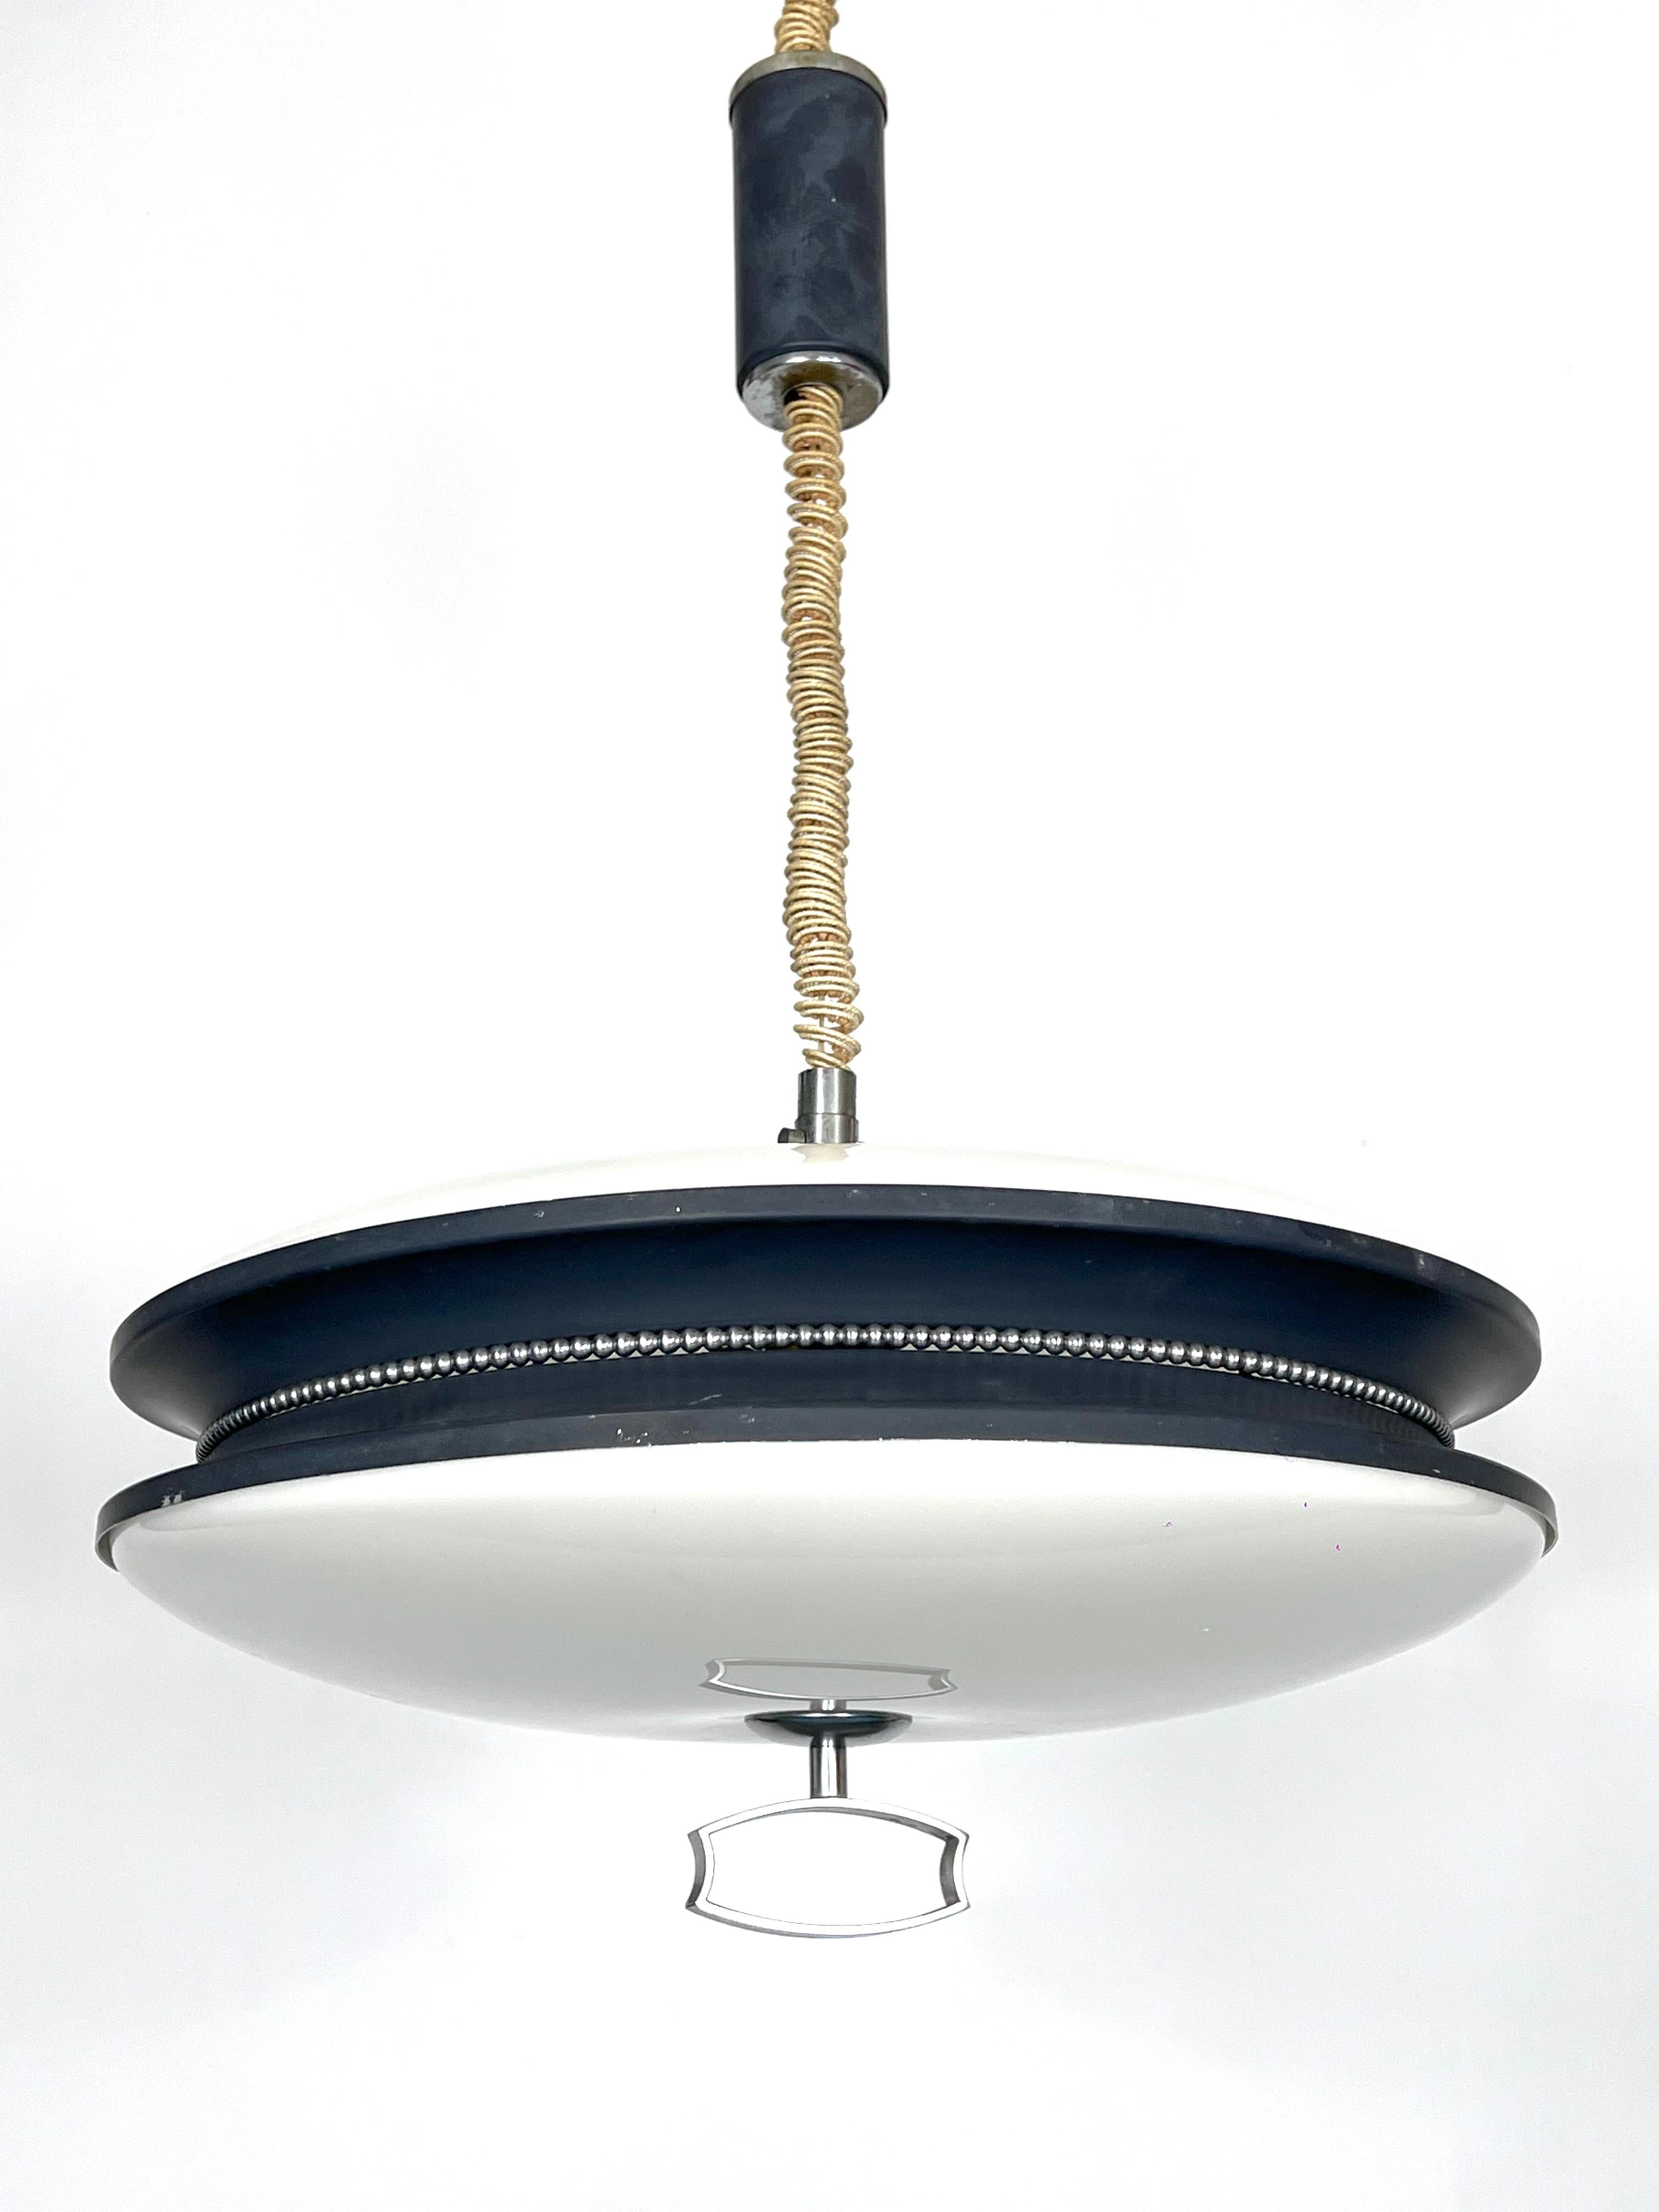 Bon état vintage avec traces d'âge et d'utilisation pour cette lampe suspendue à hauteur réglable produite par Reggiani pendant les années 60. Il est réalisé en métal laqué noir et en plexiglas blanc. Le mécanisme de réglage est entièrement